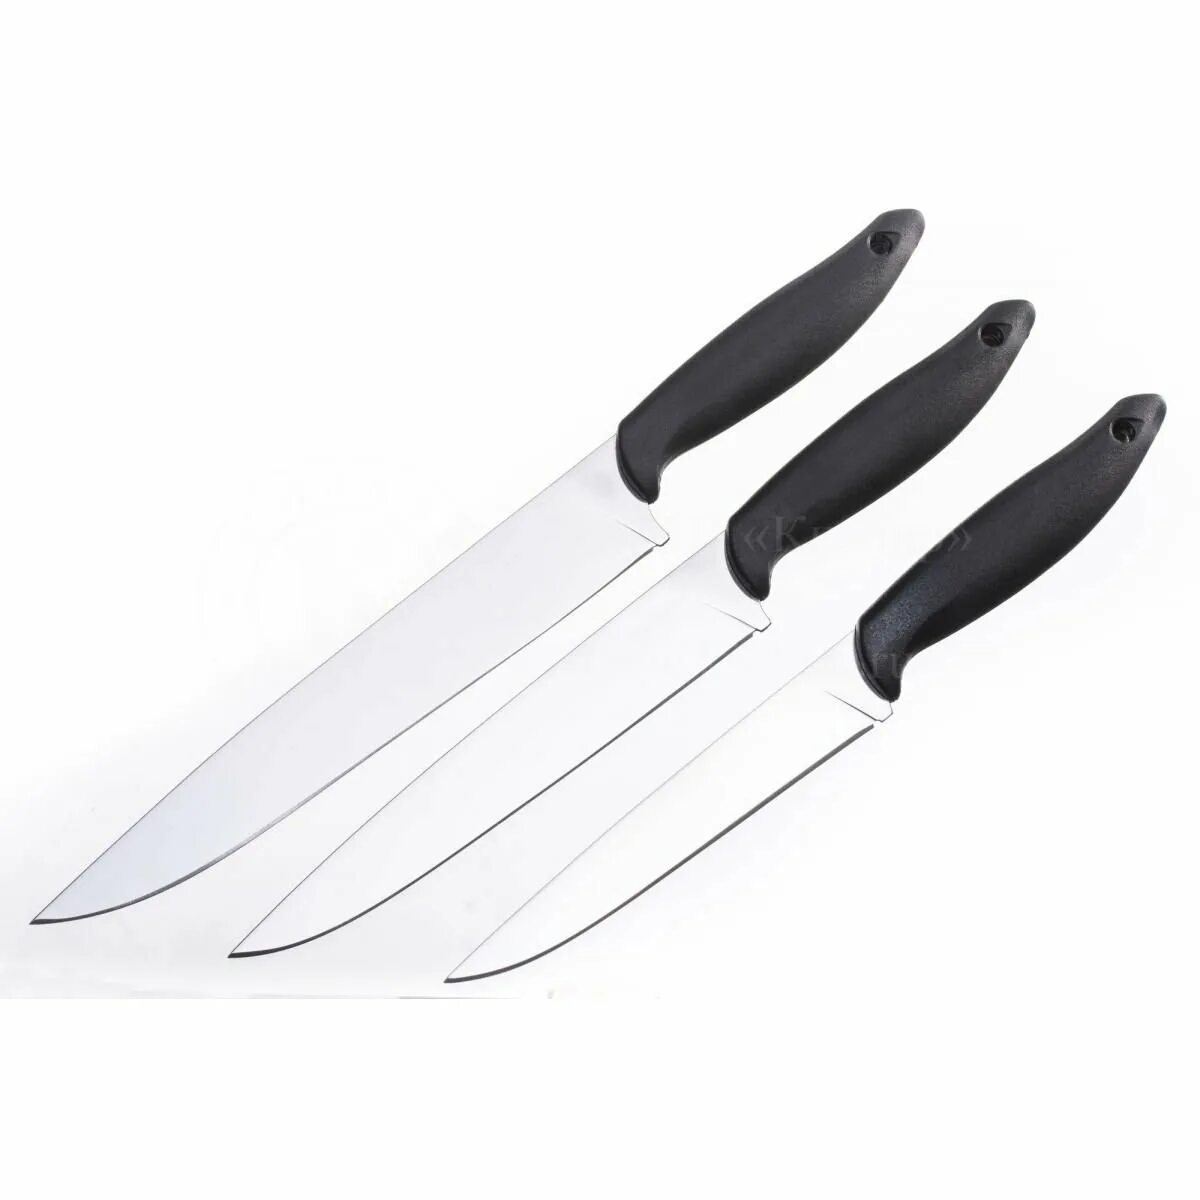 Кизляр кухонные. Ножи поварской тройки. Набор ножей поварская тройка. Складной кухонный нож. Ножи доски фирмы NW набор 3 ножа.